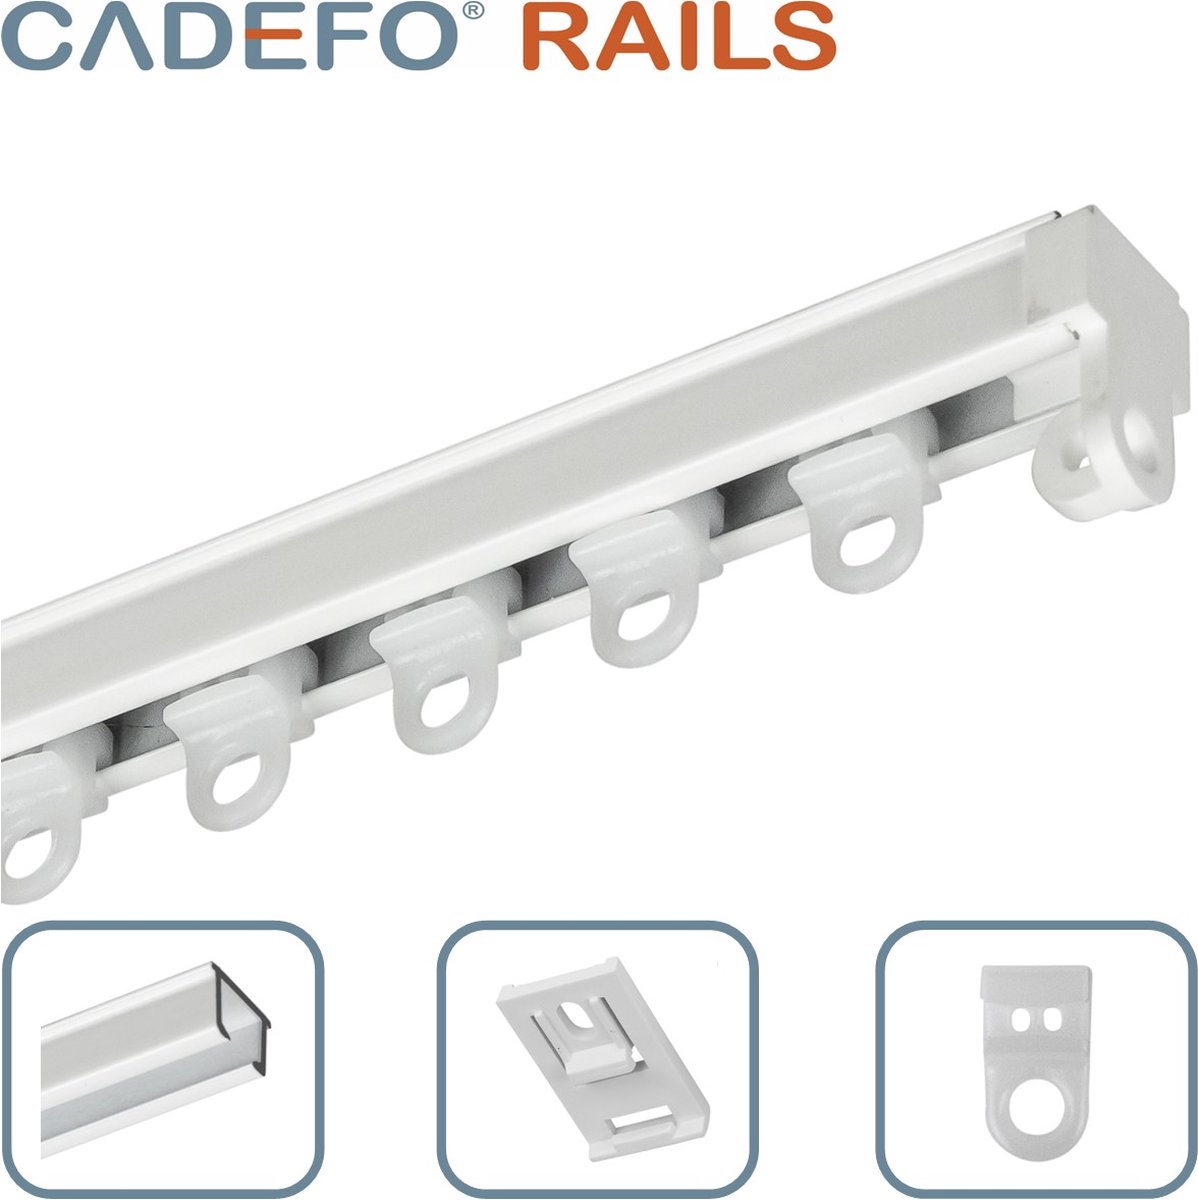 CADEFO RAILS (351 - 400 cm) Gordijnrails - Compleet op maat! - UIT 1 STUK - Leverbaar tot 6 meter - Plafondbevestiging - Lengte 367 cm